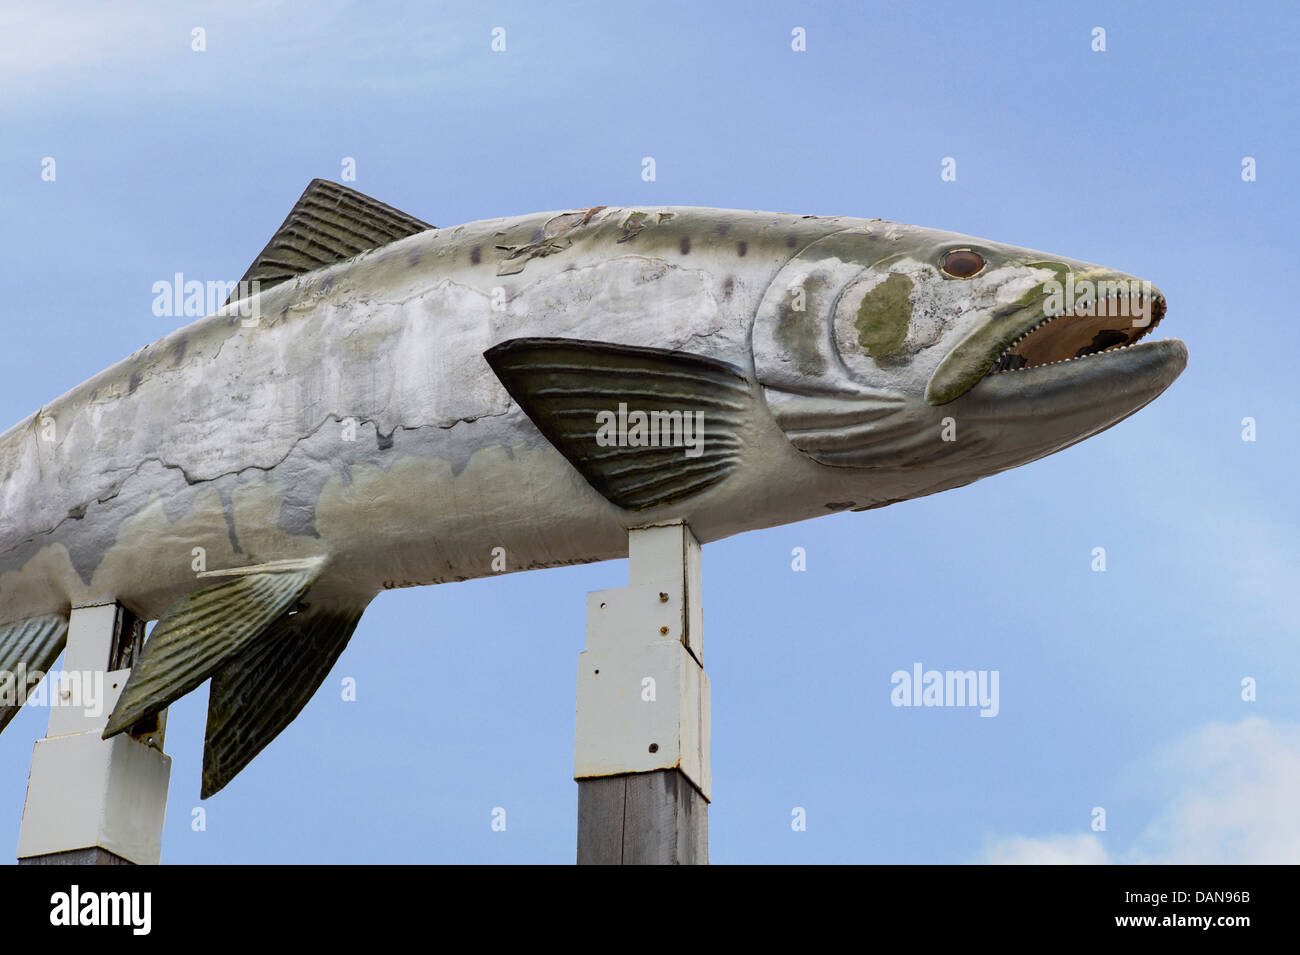 Enorme scultura di salmone per la terra di squali ristorante, Valdez, Alaska, STATI UNITI D'AMERICA Foto Stock